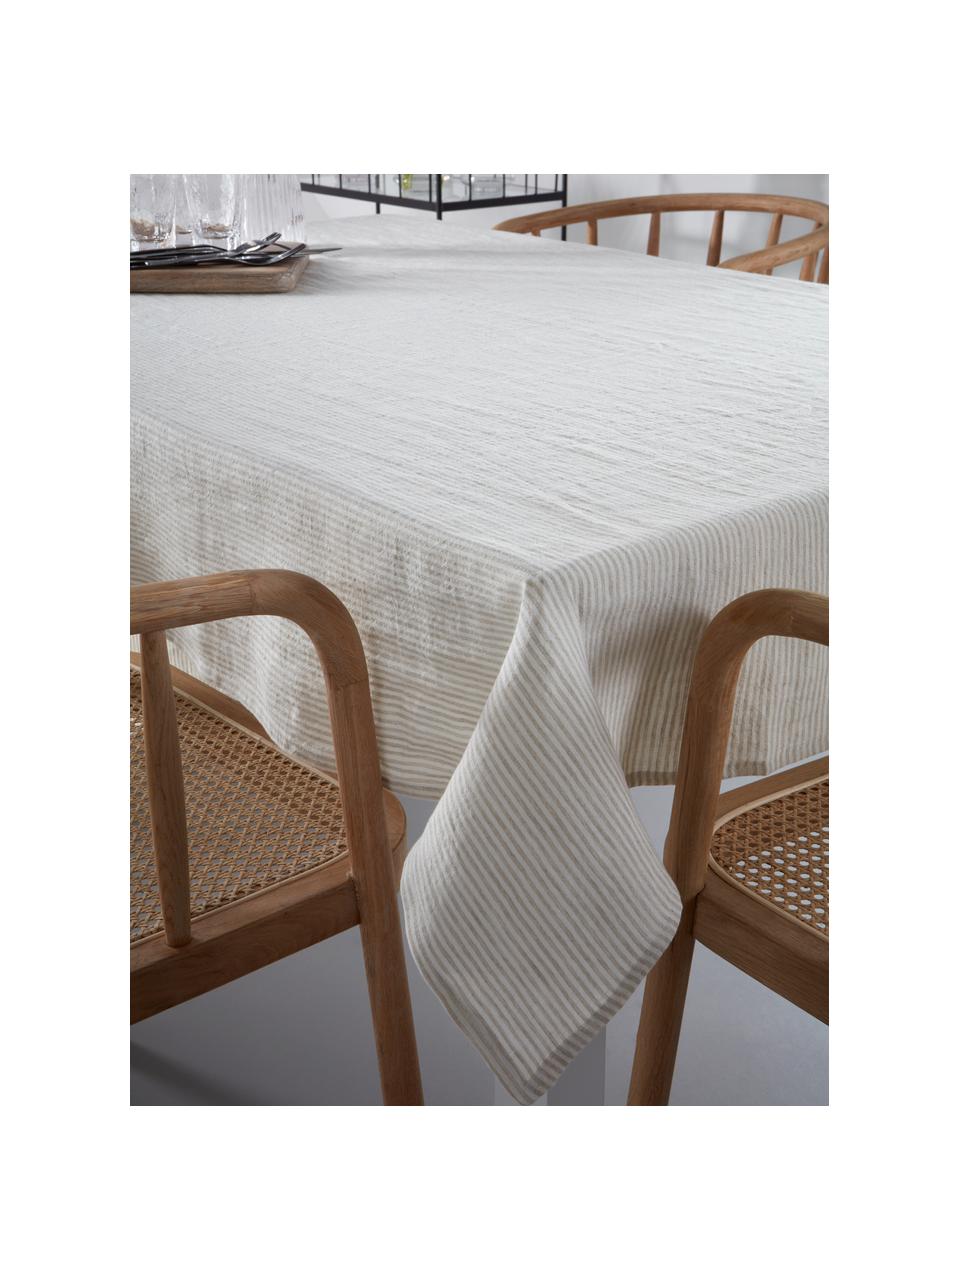 Mantel de lino Alina, 100% lino con certificado European Flax, Beige, blanco crema, De 4 a 6 comensales (An 145 x L 200 cm)